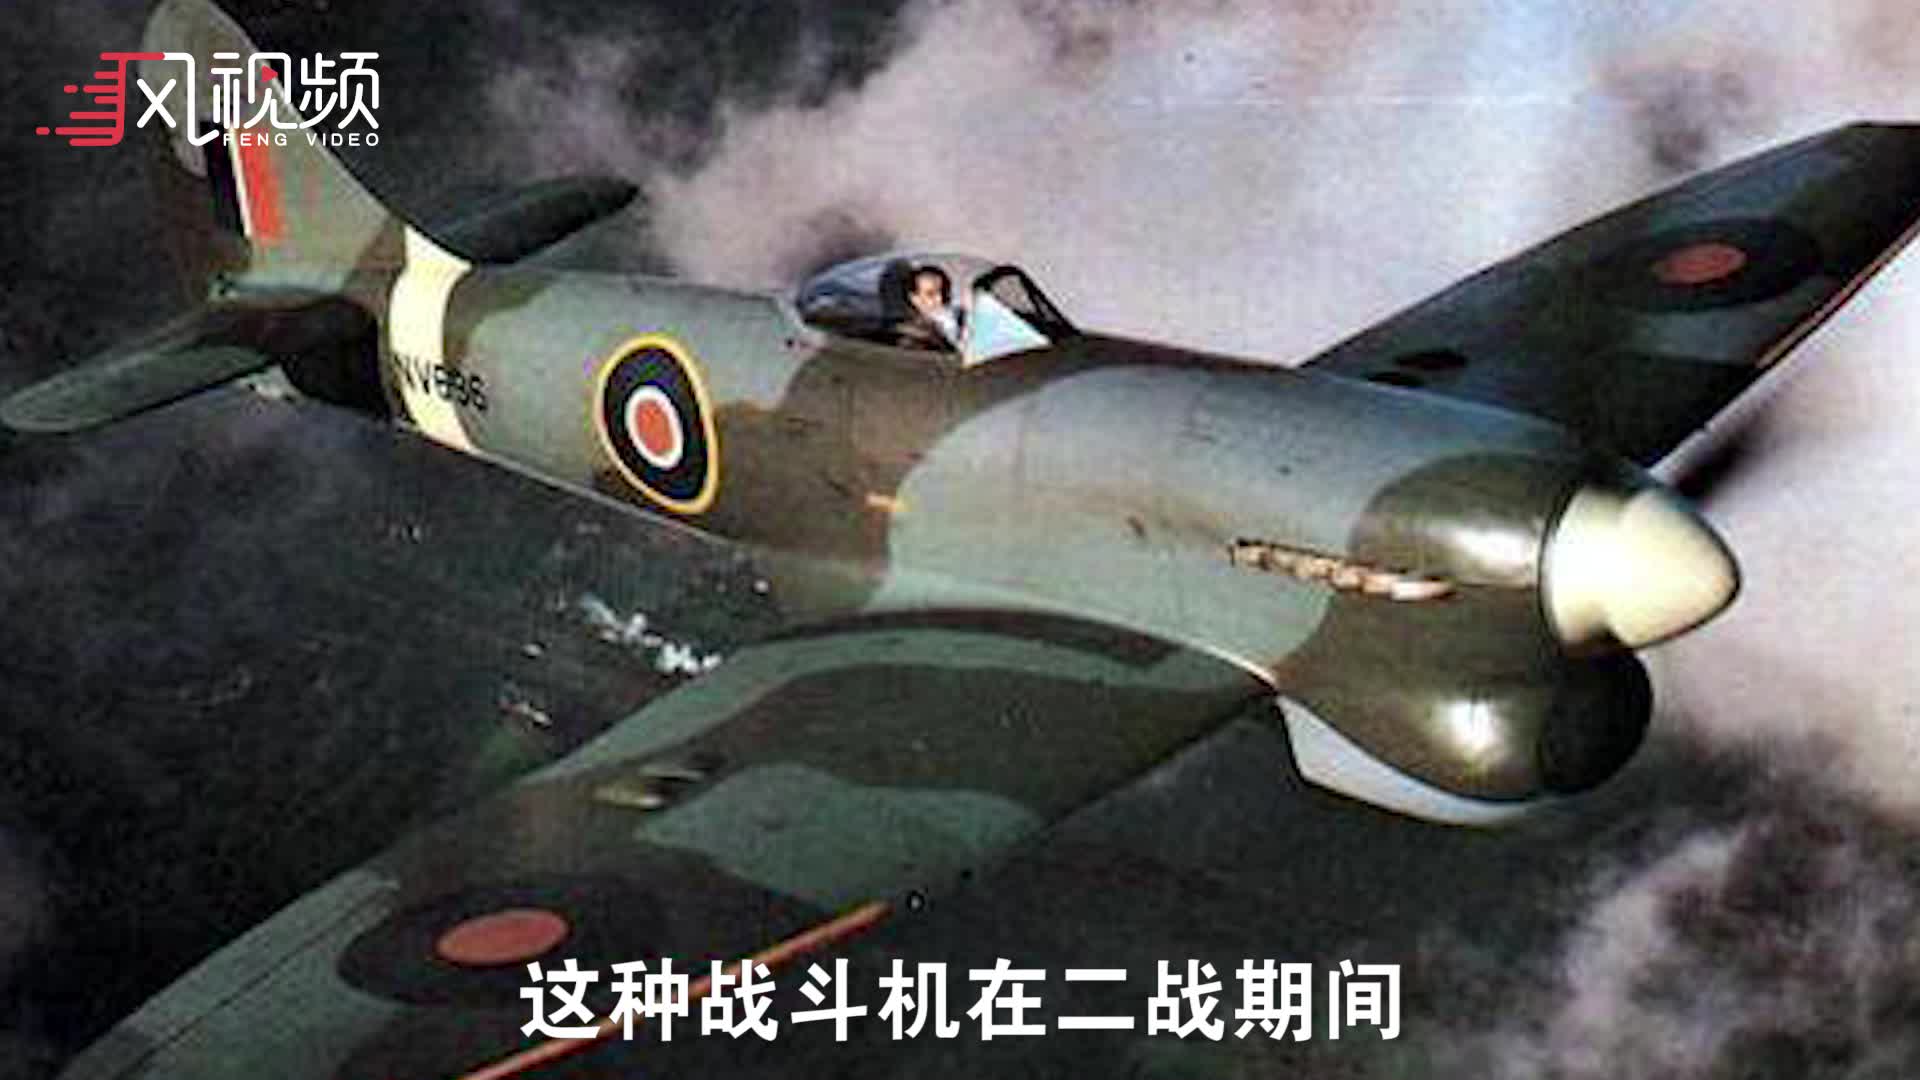 英国展示“第六代战斗机”模型 沿用二战名机“暴风”名称